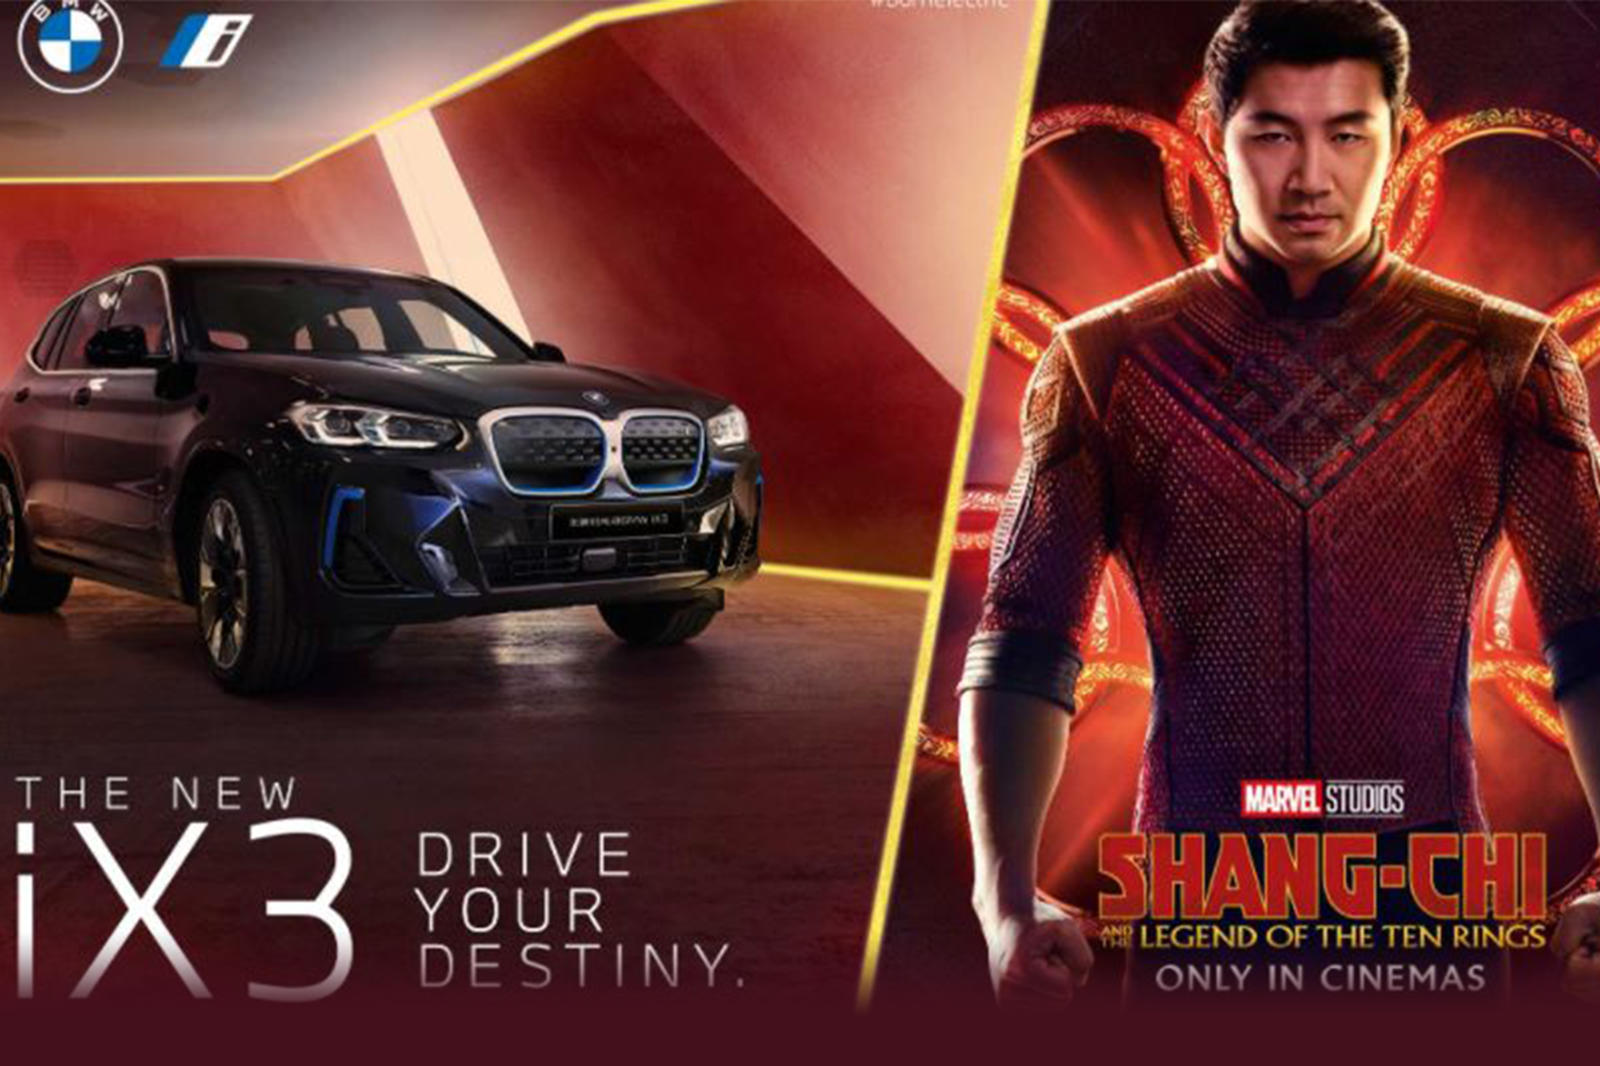 Фильм о Шанг-Чи следует за другим релизом Marvel Studios, выпущенным ранее в этом году, «Черная вдова», в котором снимались X3 и 2 Series Gran Coupe. «Шан-Чи» выходит в прокат в четверг 2 сентября 2021 года.